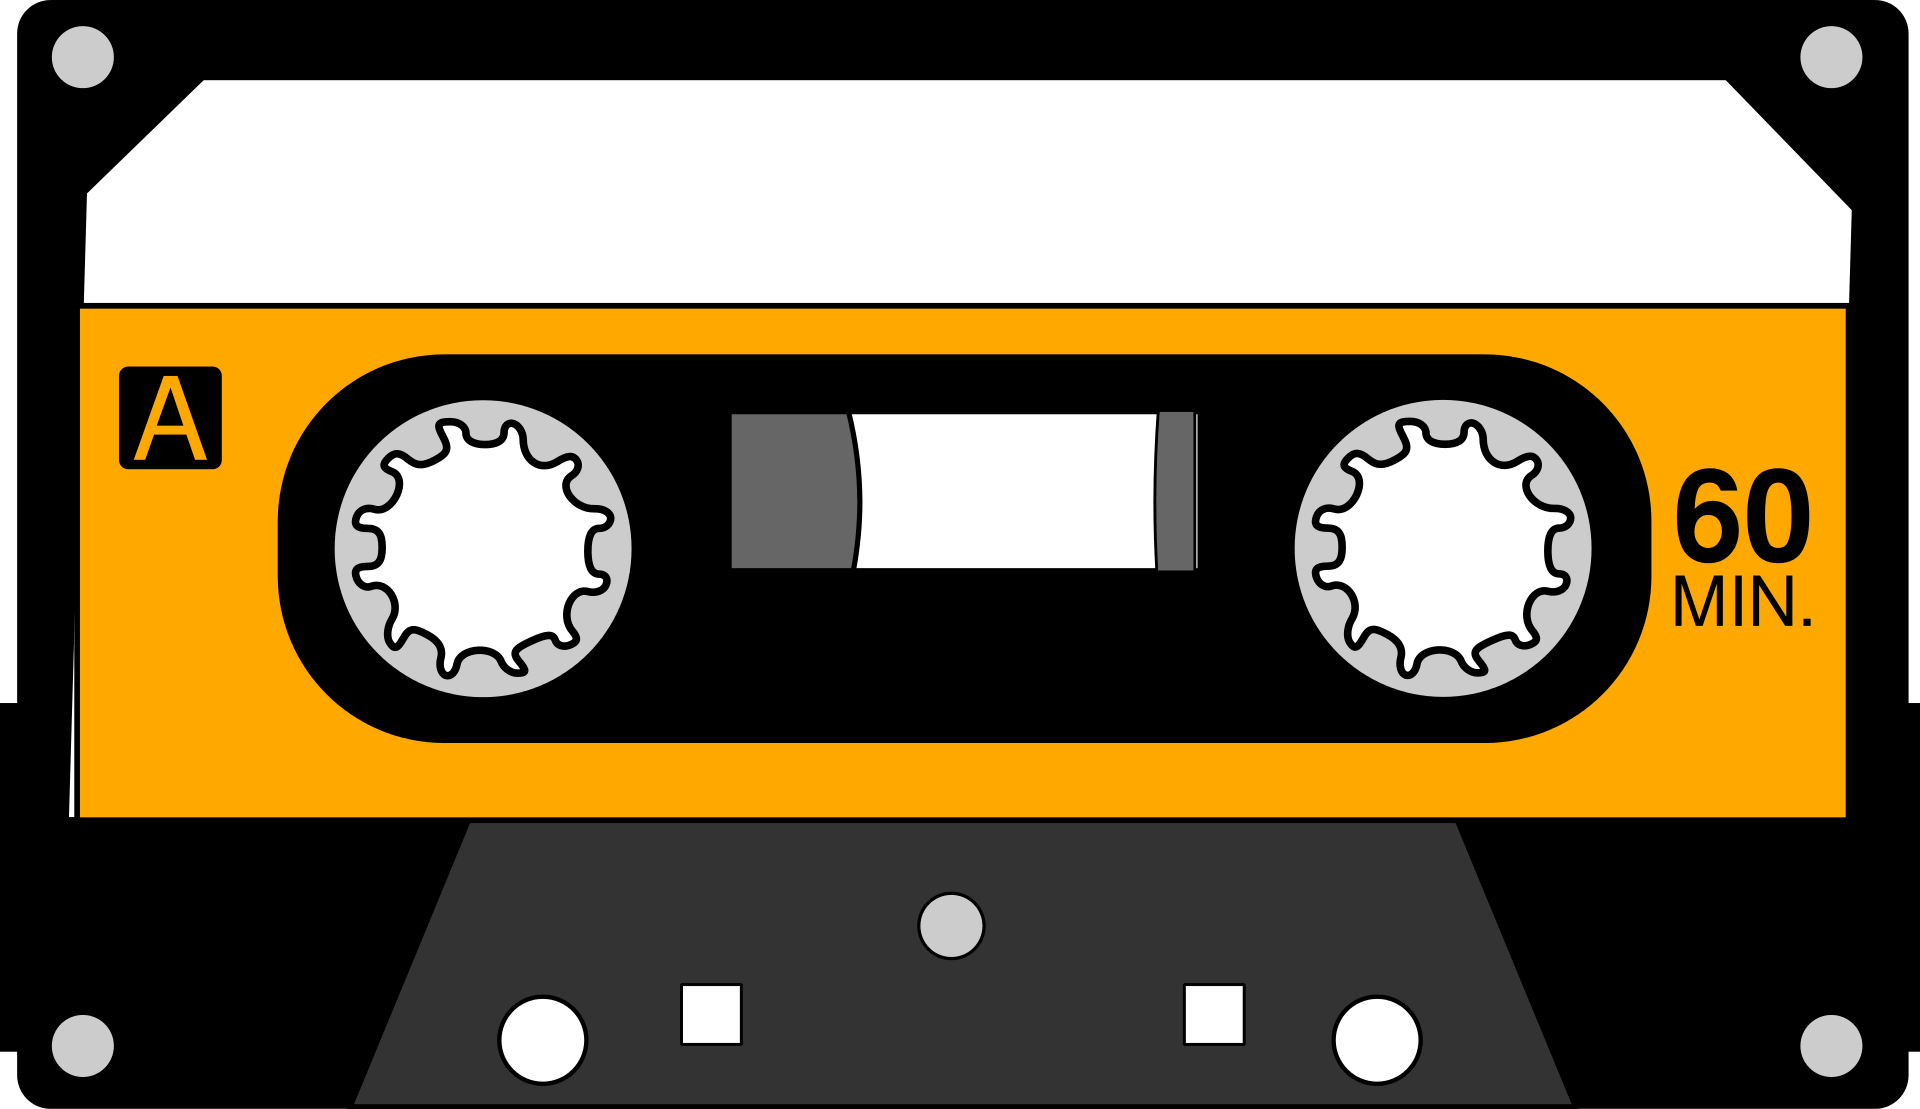 Kaseta magnetofon w kolorze czarnym, białym i pomarańczowym. Centralnie po lewej stronie znajduje się litera A oznaczająca stronę kasety. Centralnie po prawej stronie znajduje się napisy 60 minut.